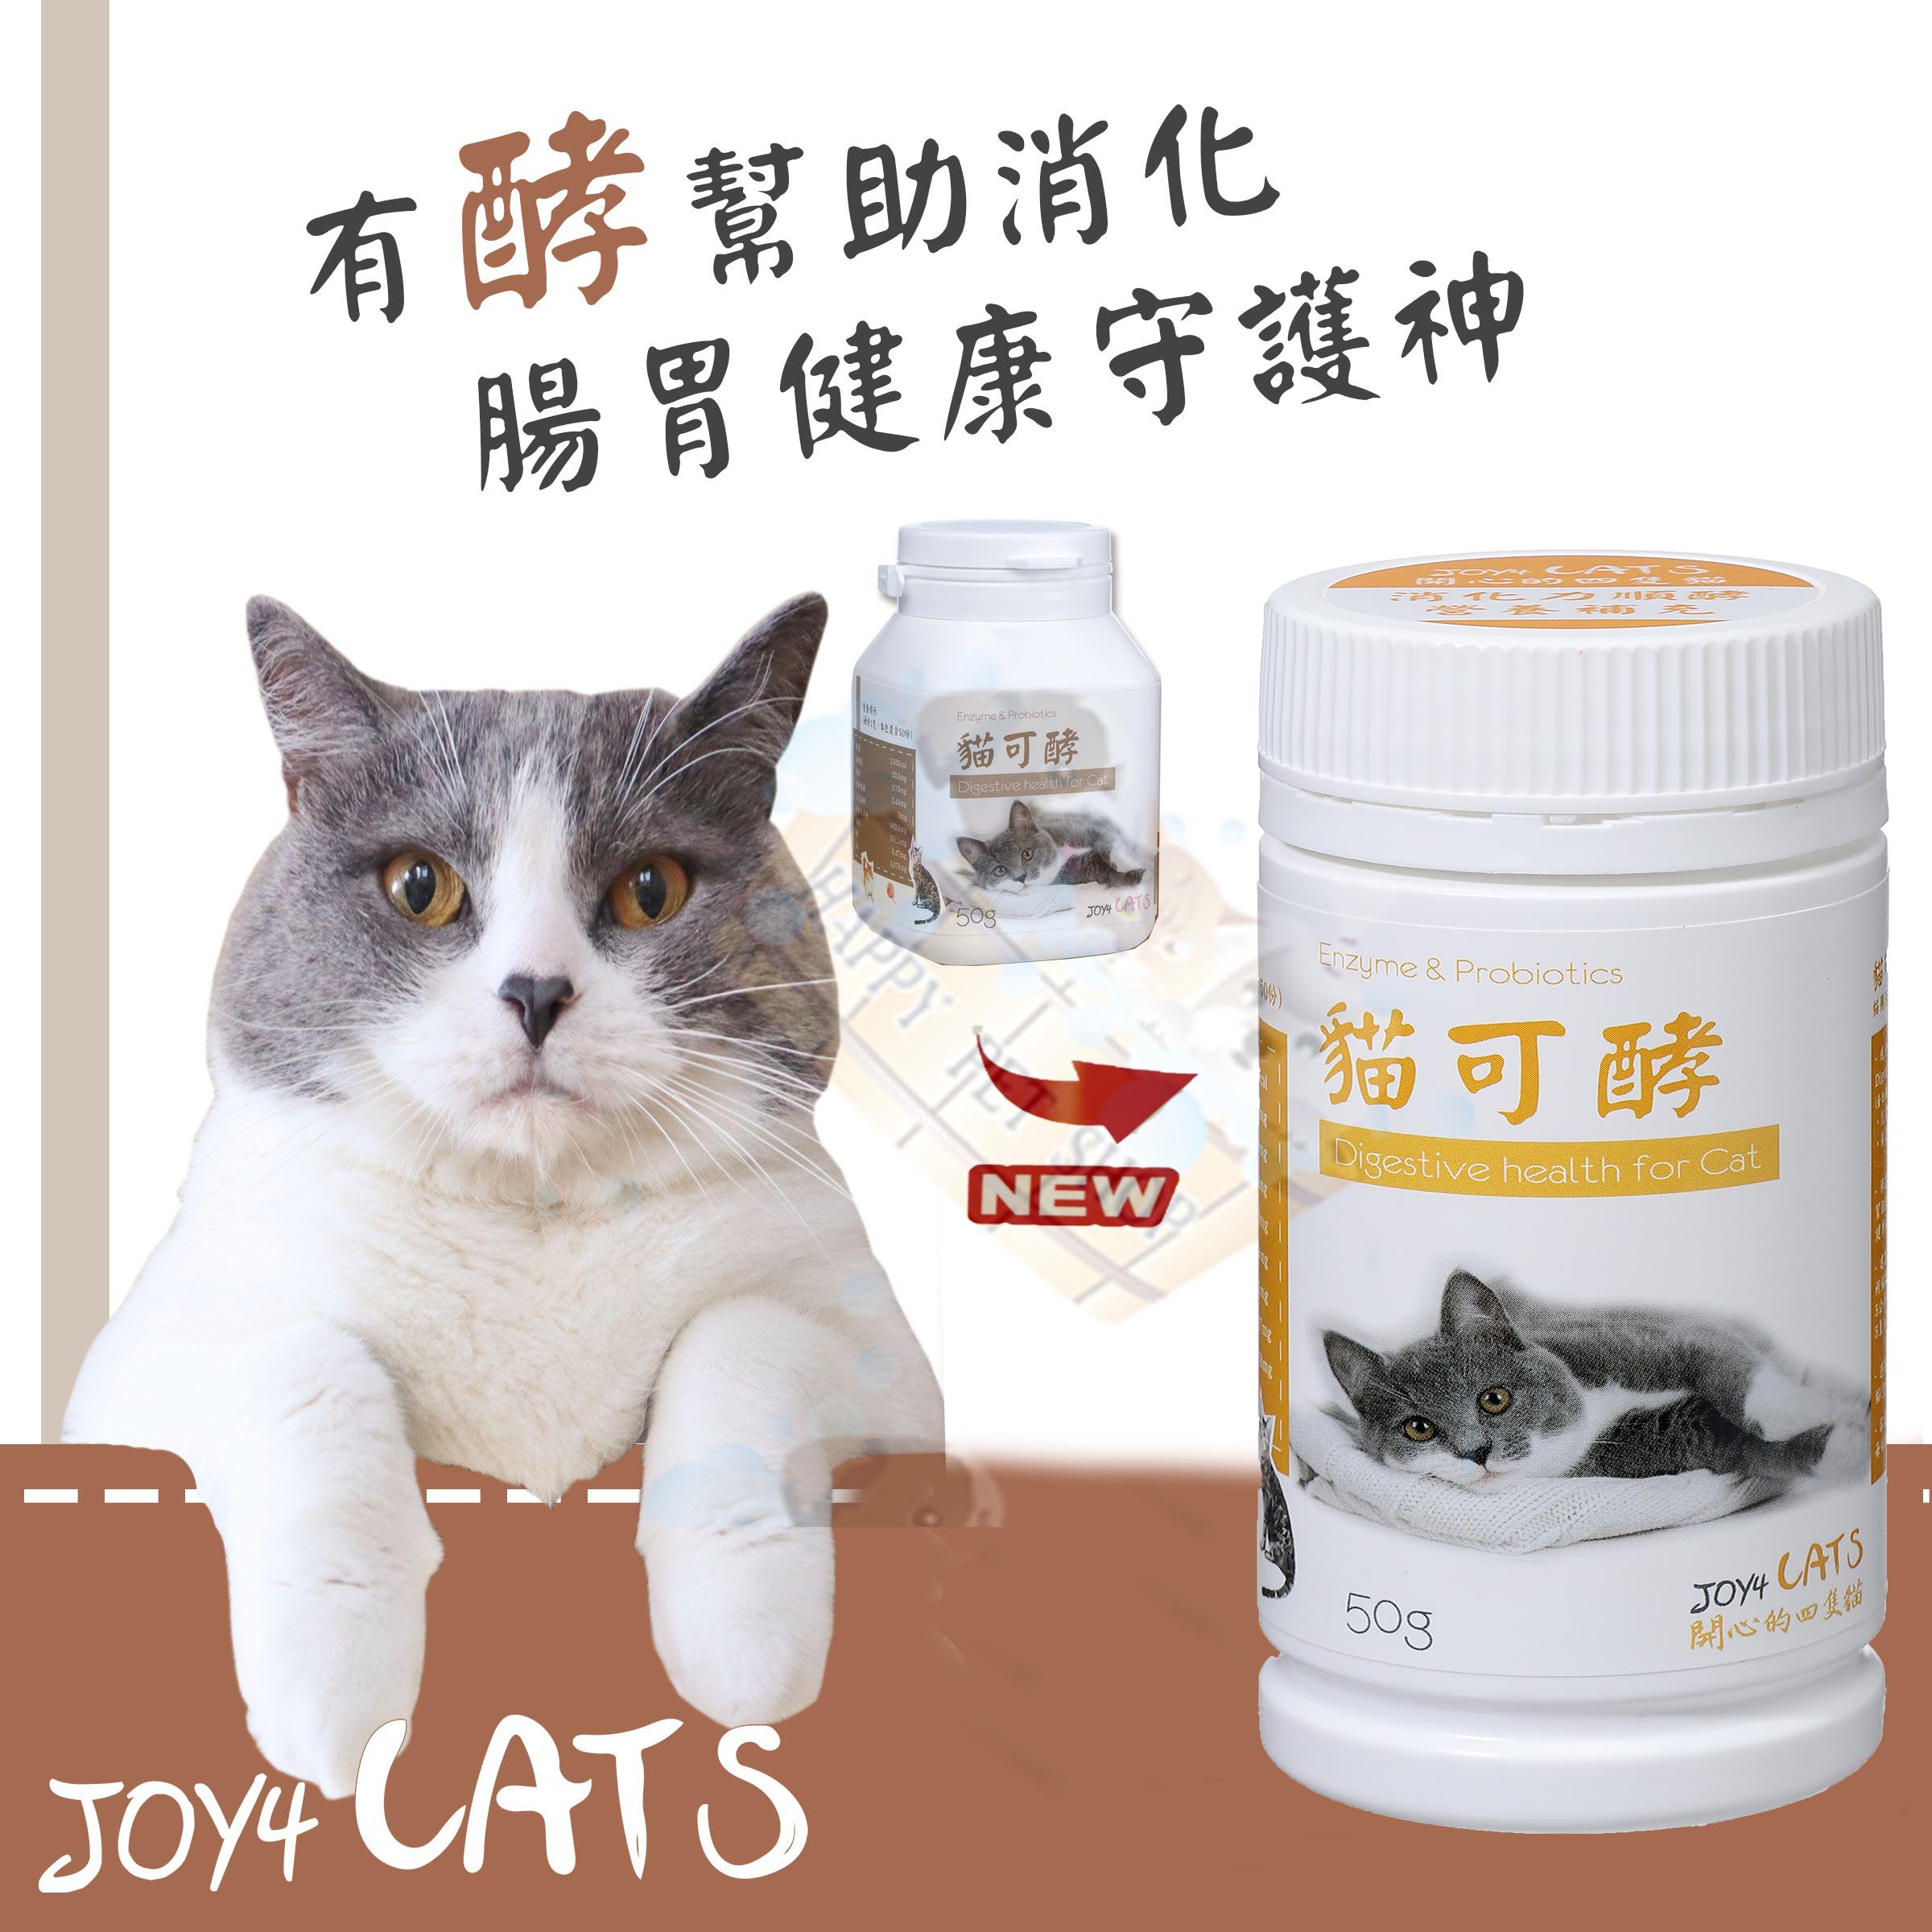 悅貓樂 貓可酵50g~貓用腸胃健康營養補給品/綜合消化酵素/益生菌/益生質